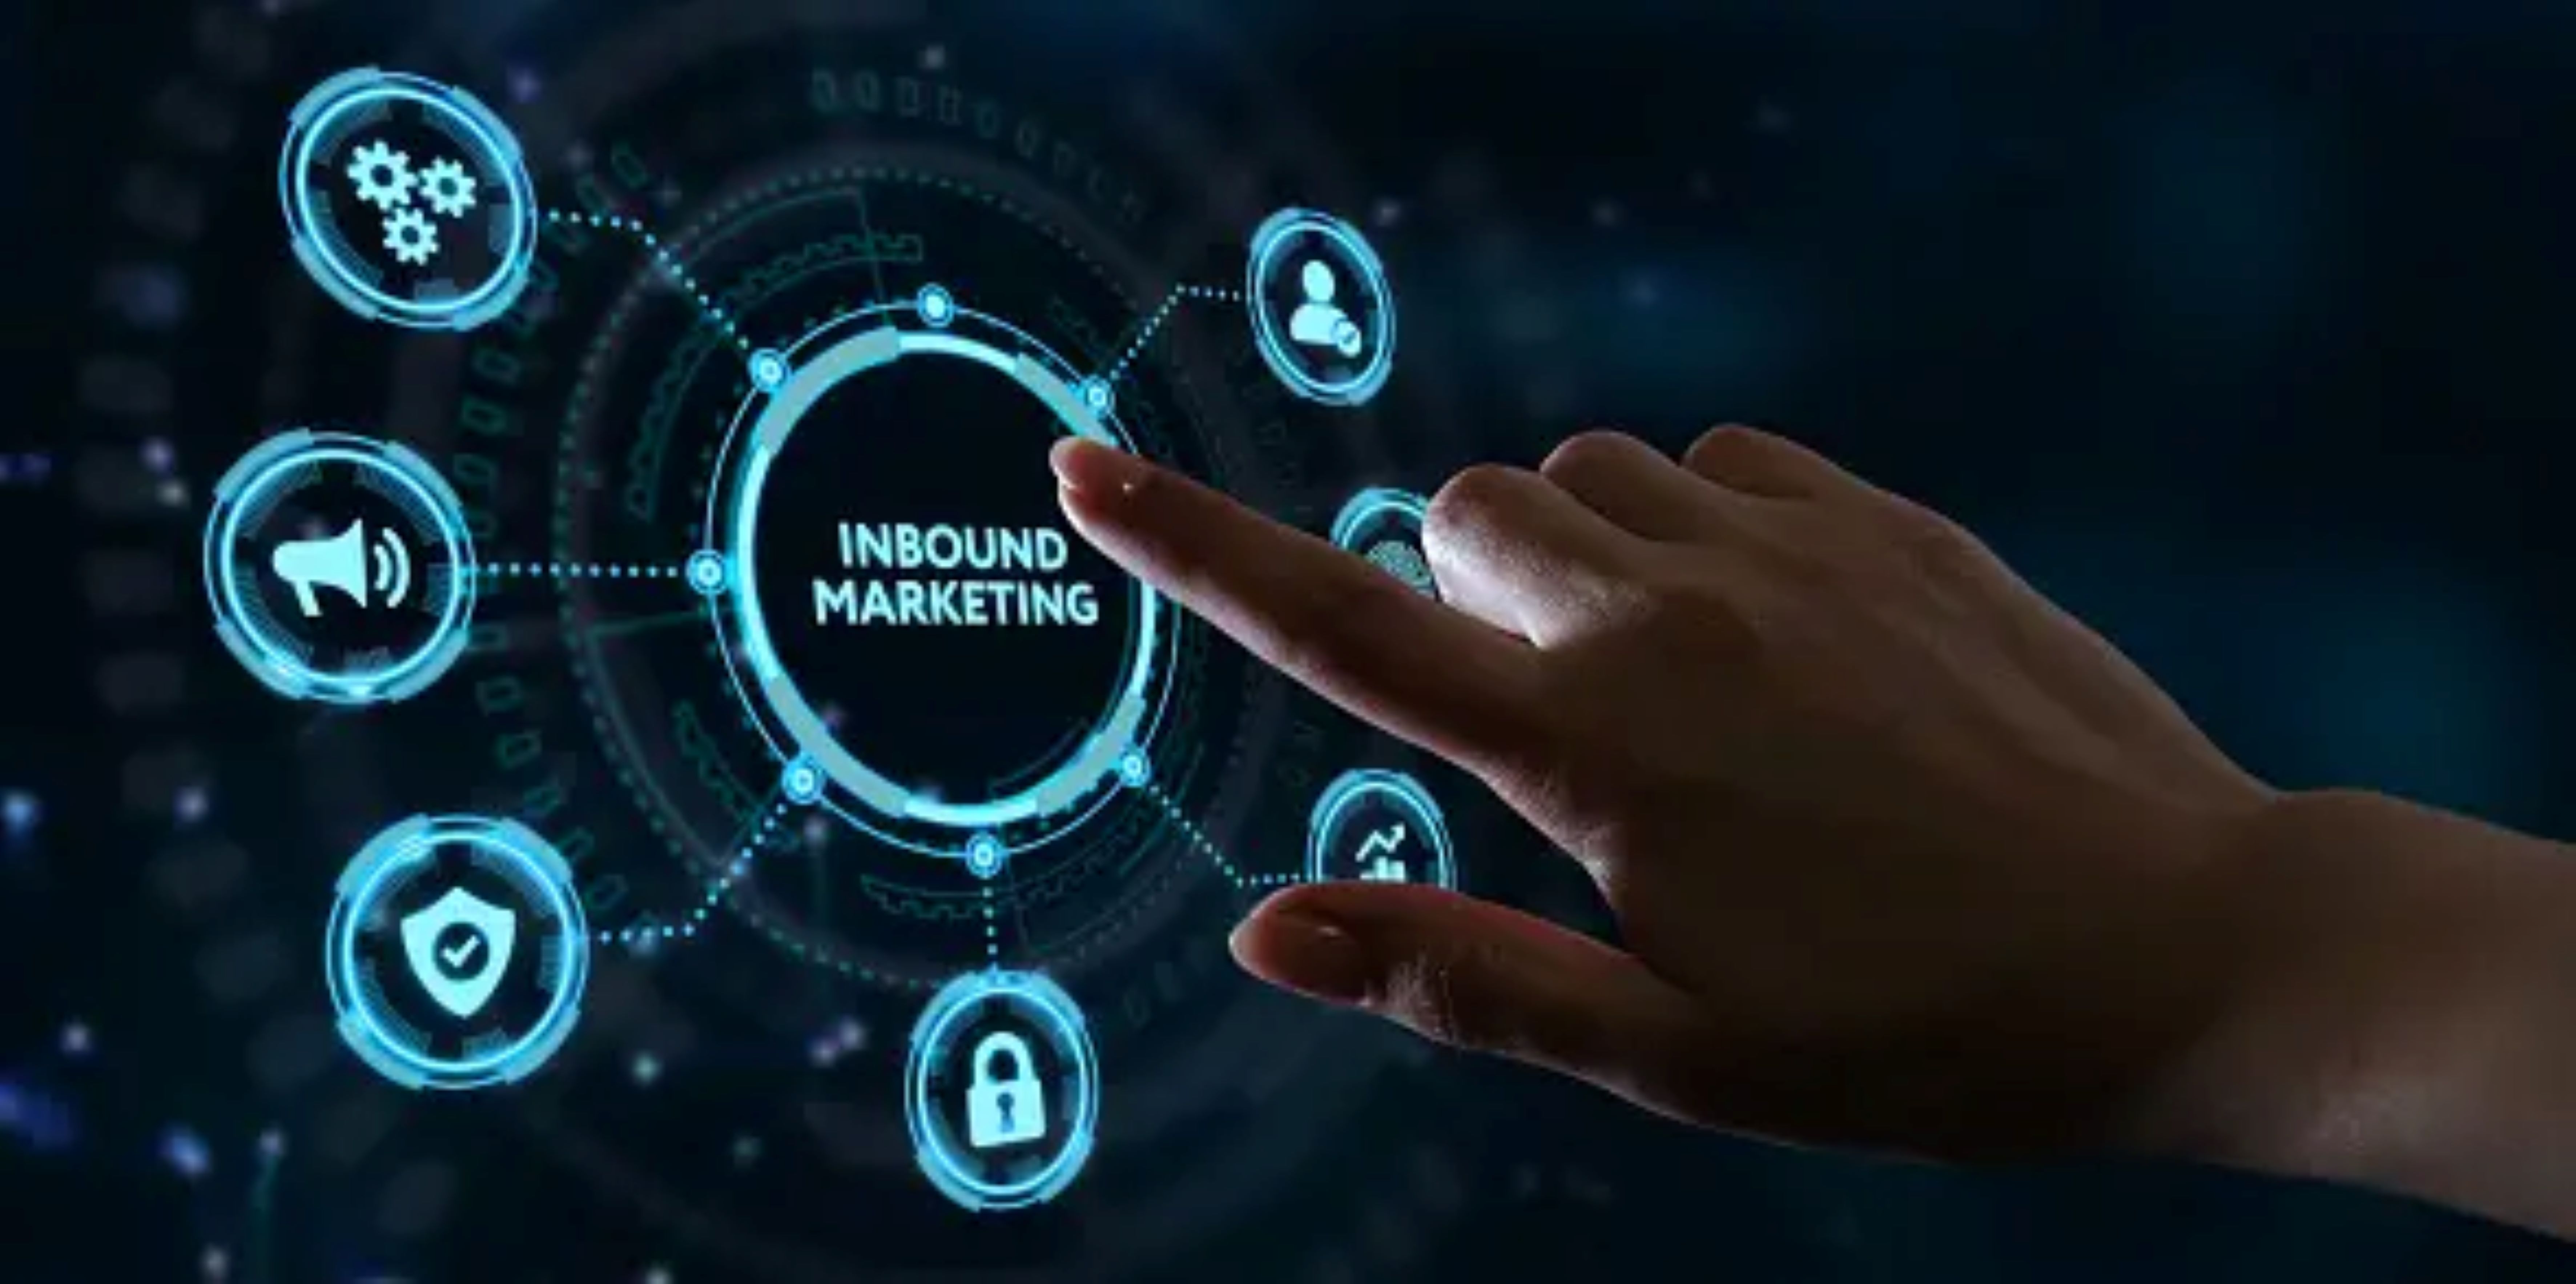  EI Inbound Marketing permite llegar a nuevos clientes con base en contenidos de calidad